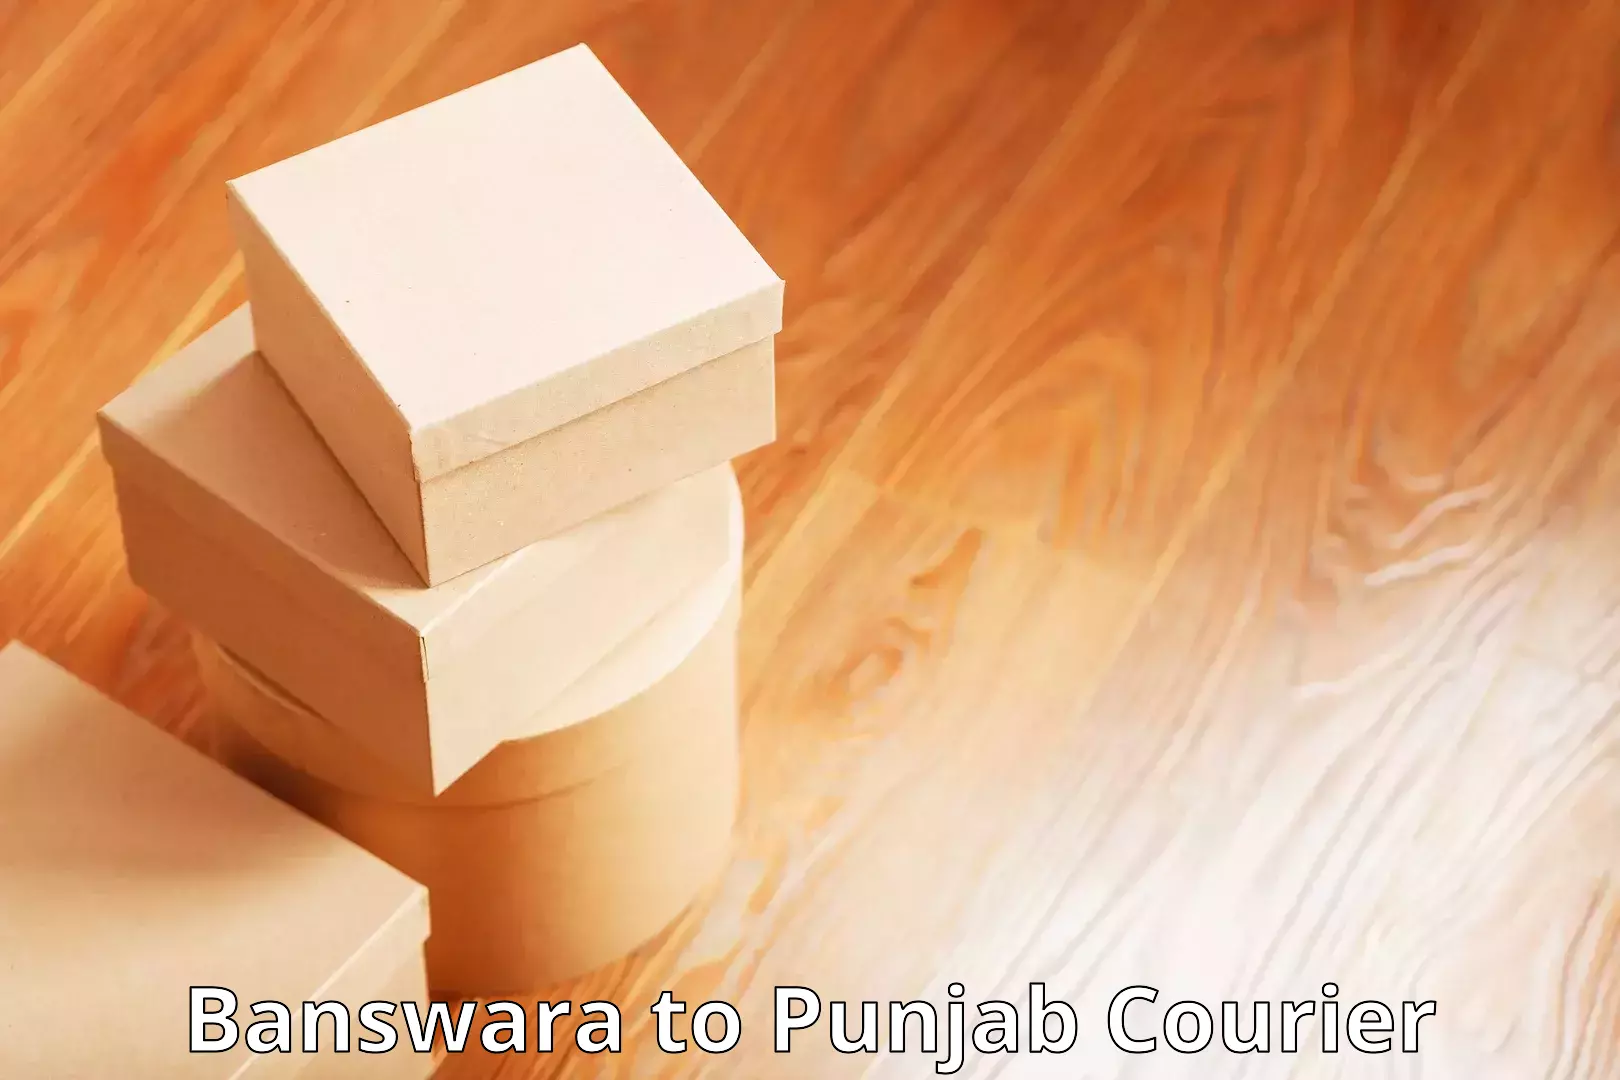 Multi-service courier options Banswara to Punjab